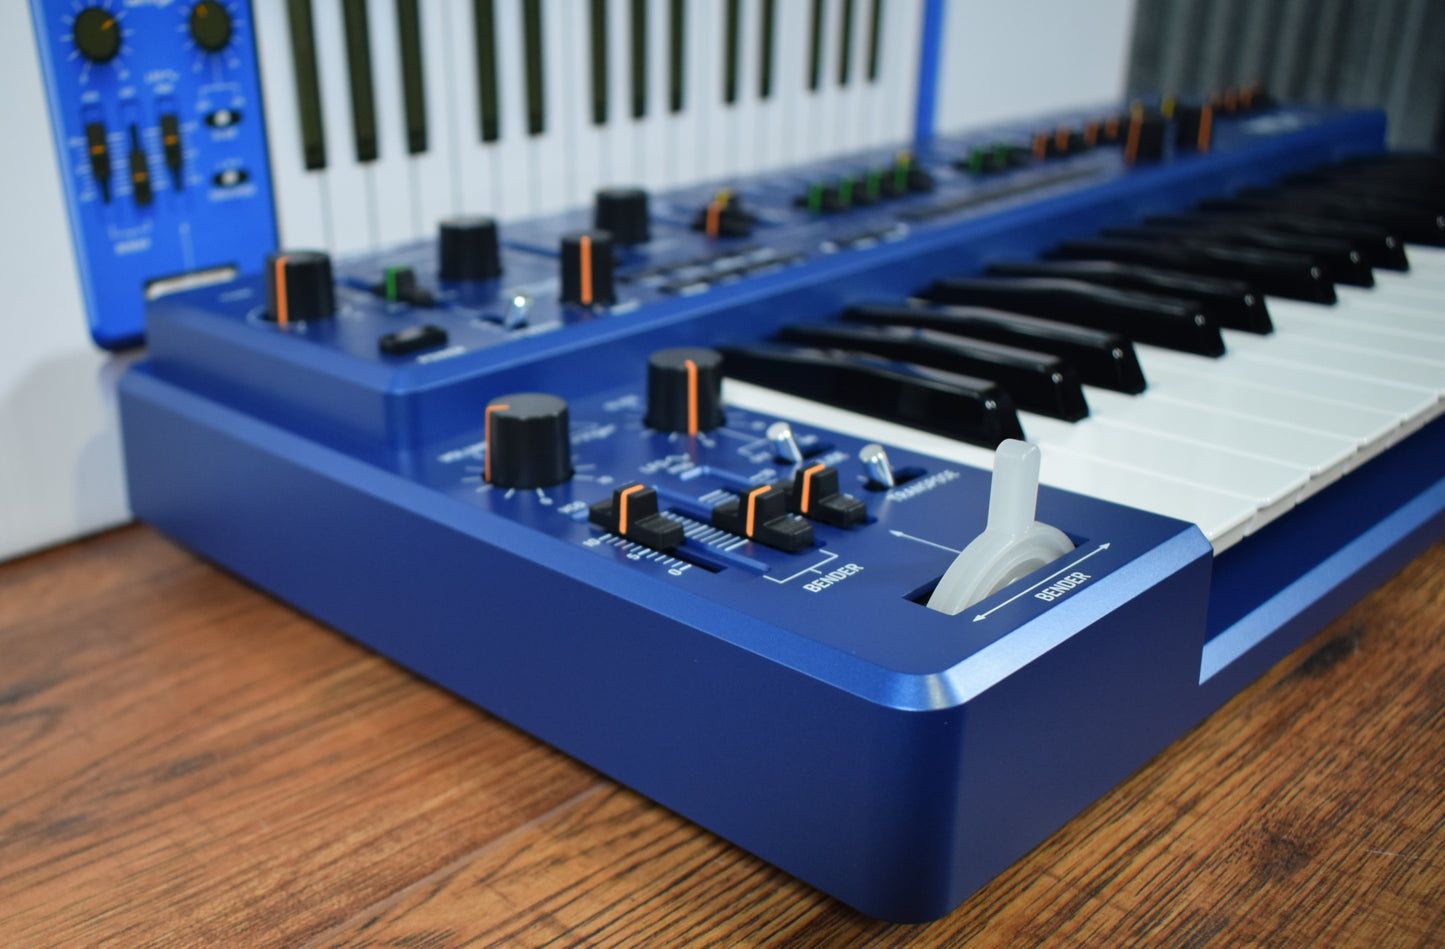 Behringer MS-1-BU 32 Key Analog Synthesizer Blue